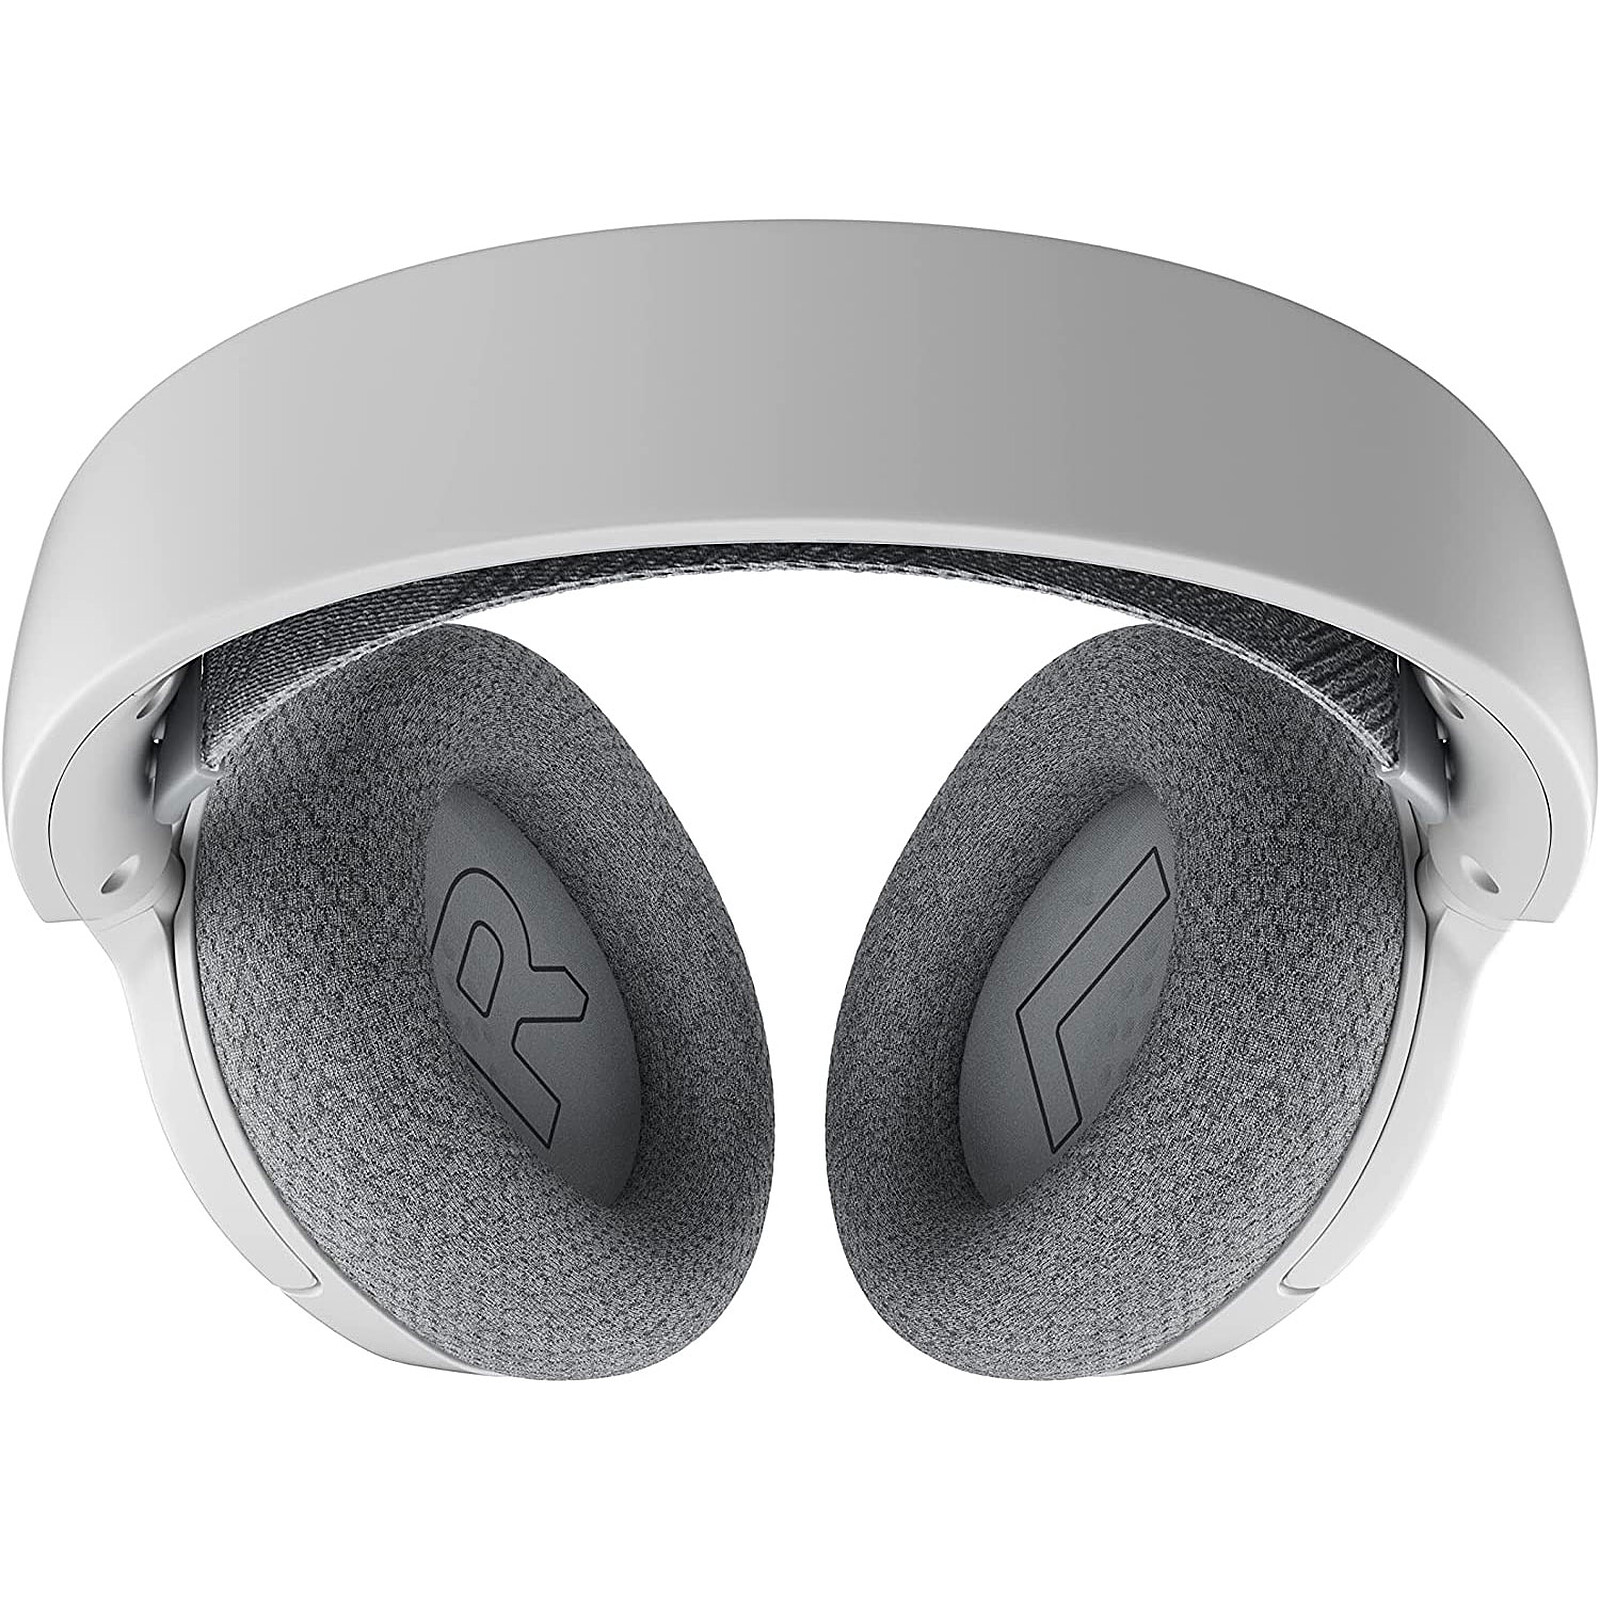 SteelSeries Arctis 3 2019 (blanc) - Micro-casque - Garantie 3 ans LDLC